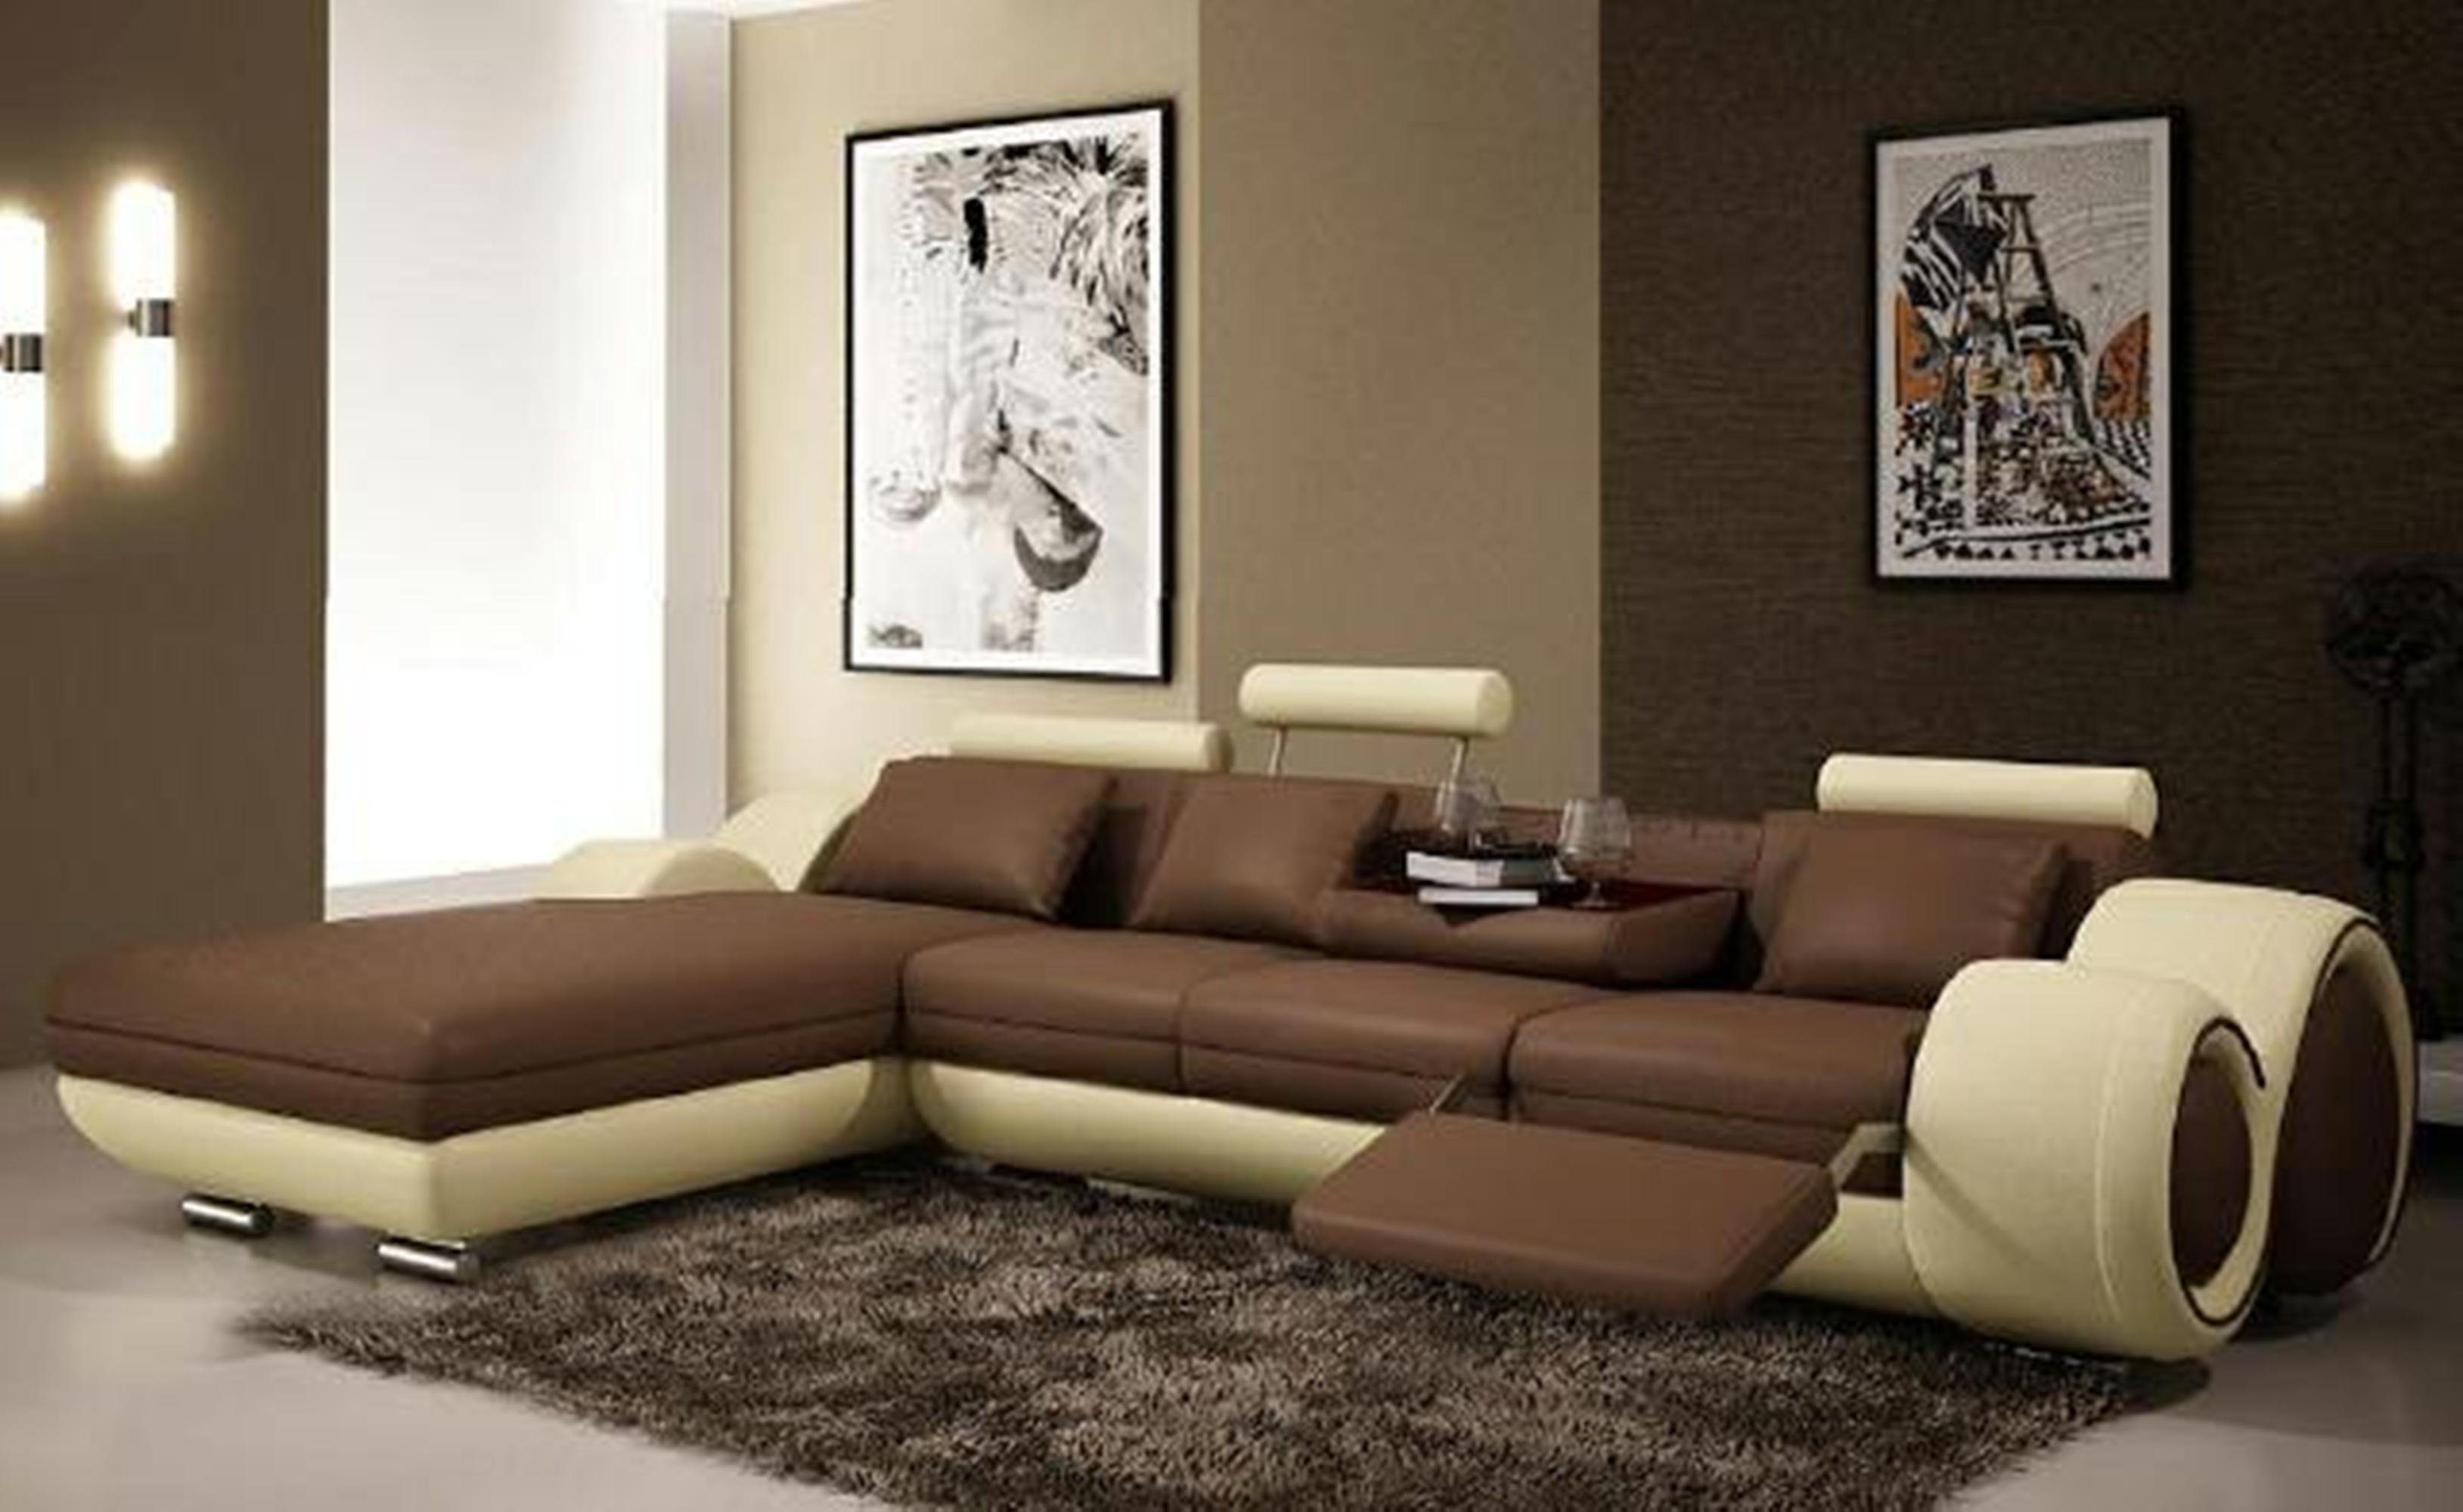 JVmoebel Ecksofa Modernes Ledersofa Ecksofa braun-beige Made Wohnzimmer Couch Europe Polster Sofa, in